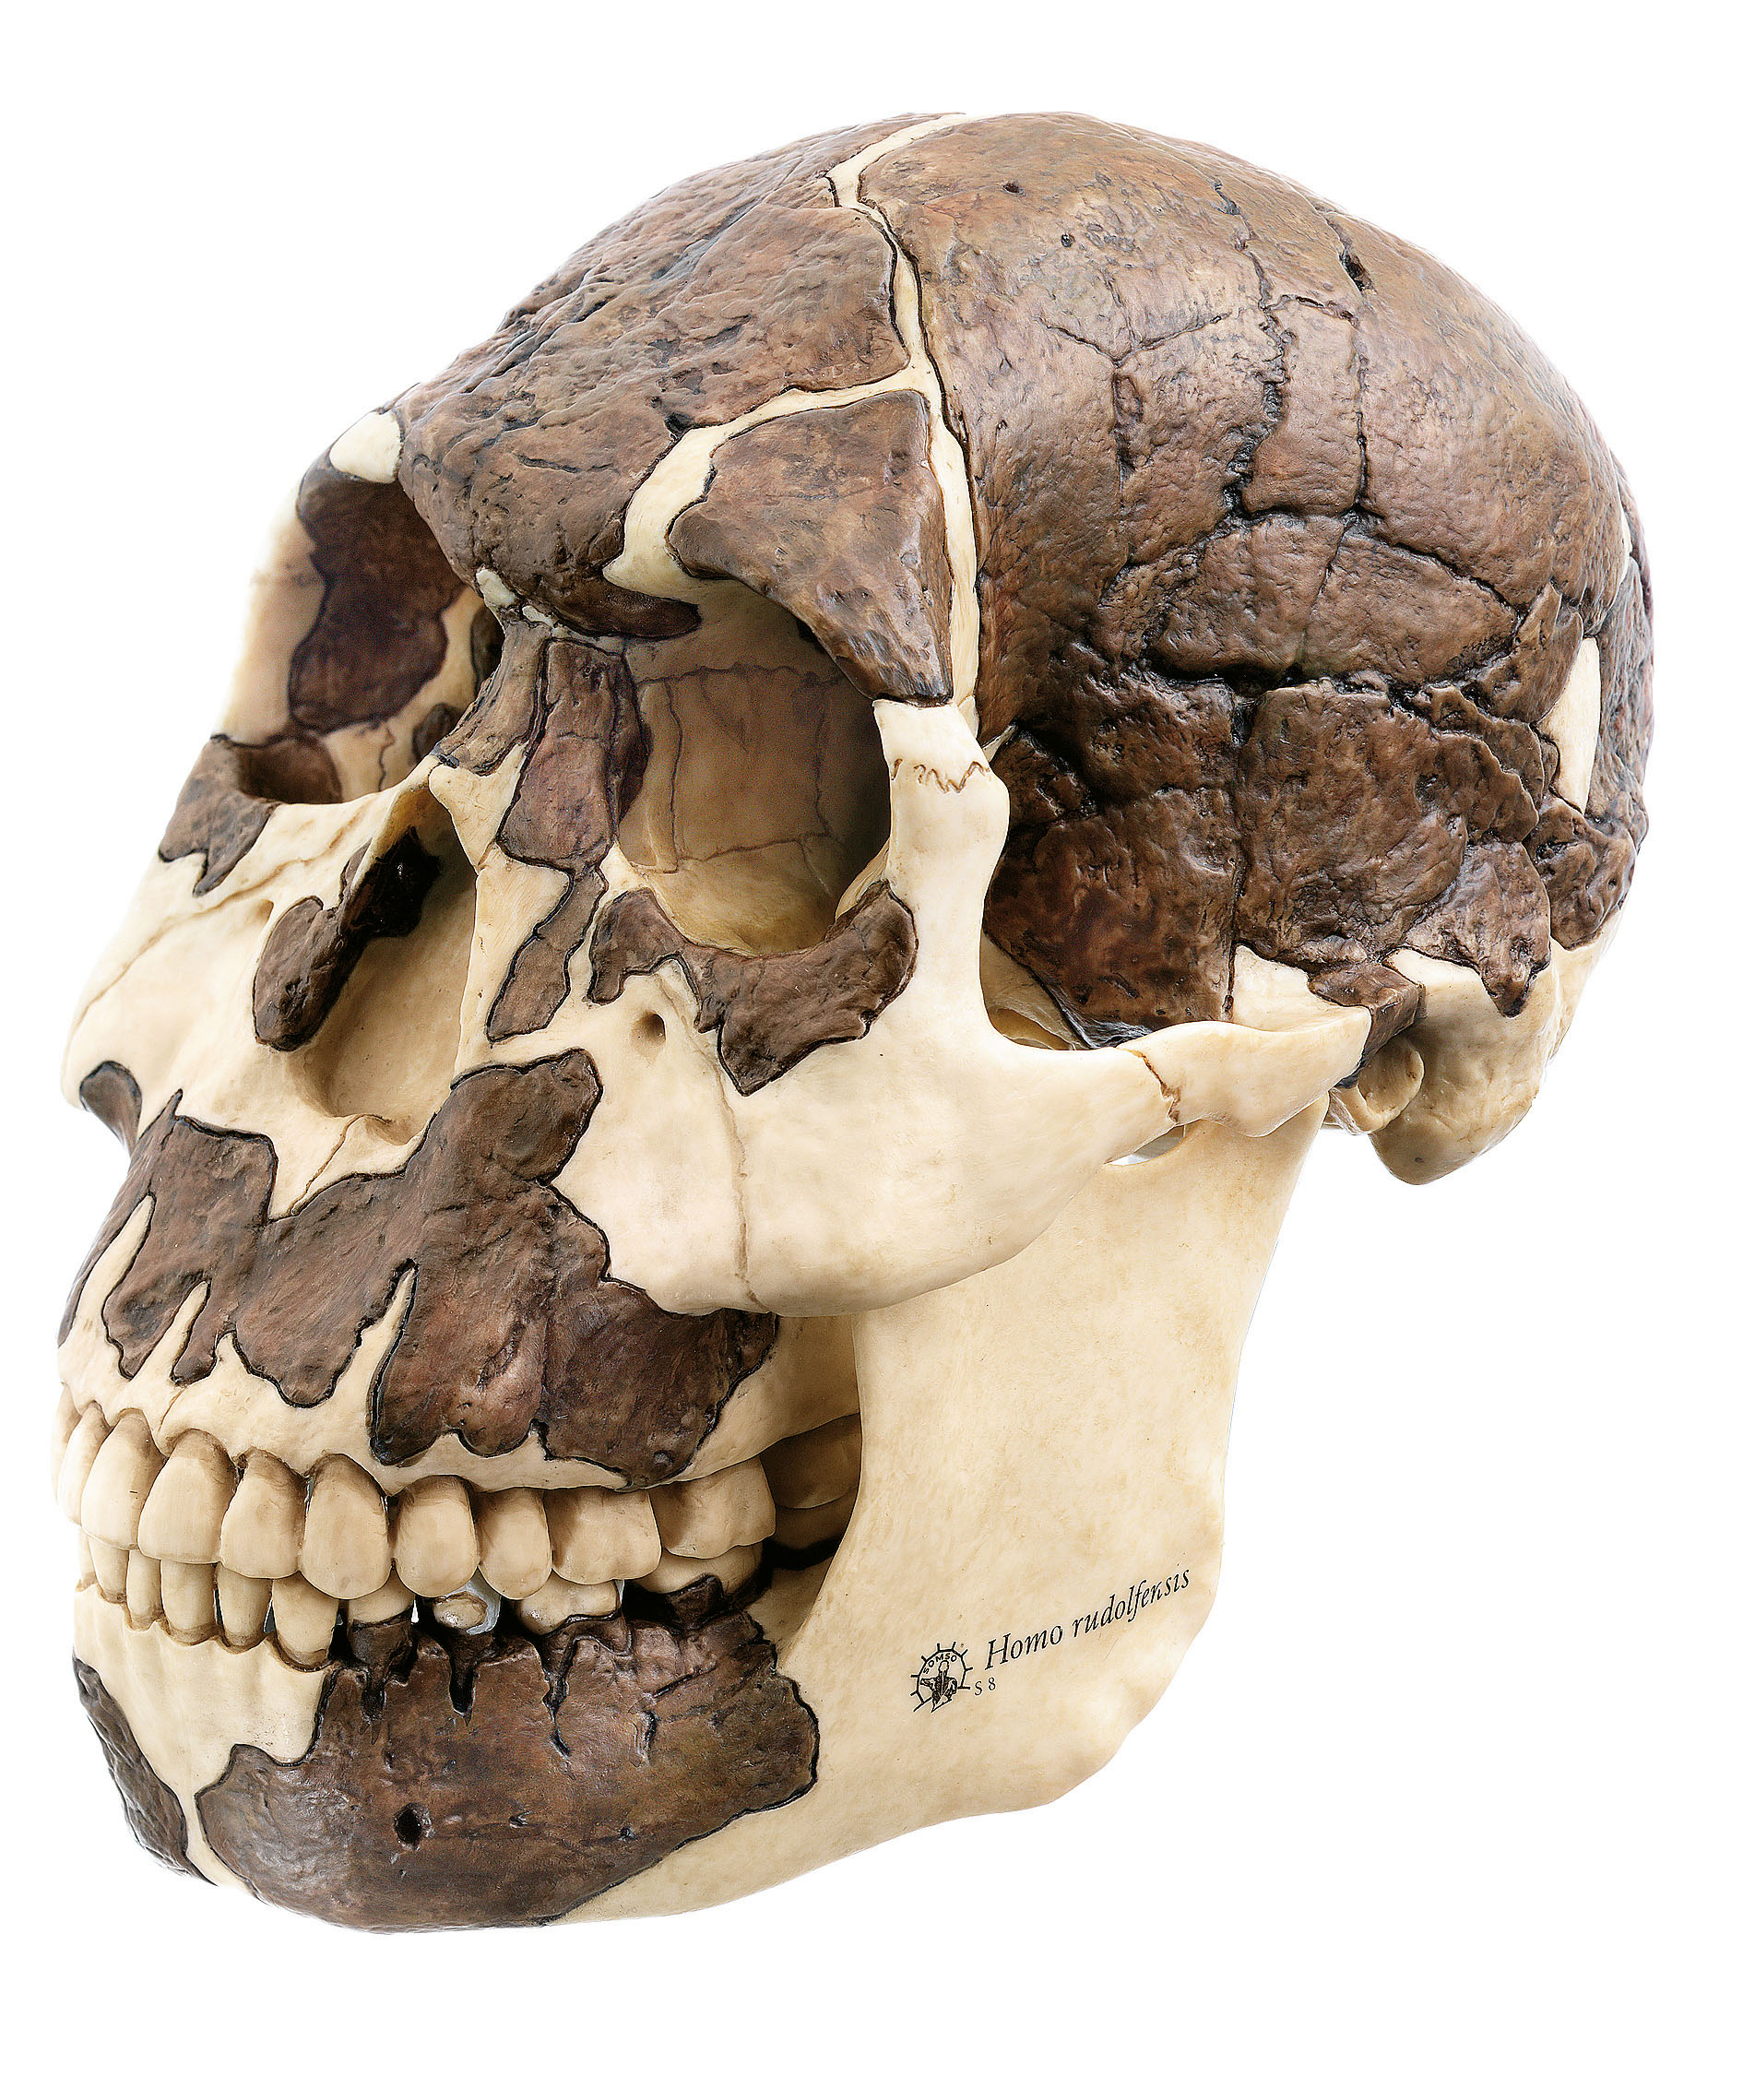 Reconstruction of a Skull or Homo Rudolfensis